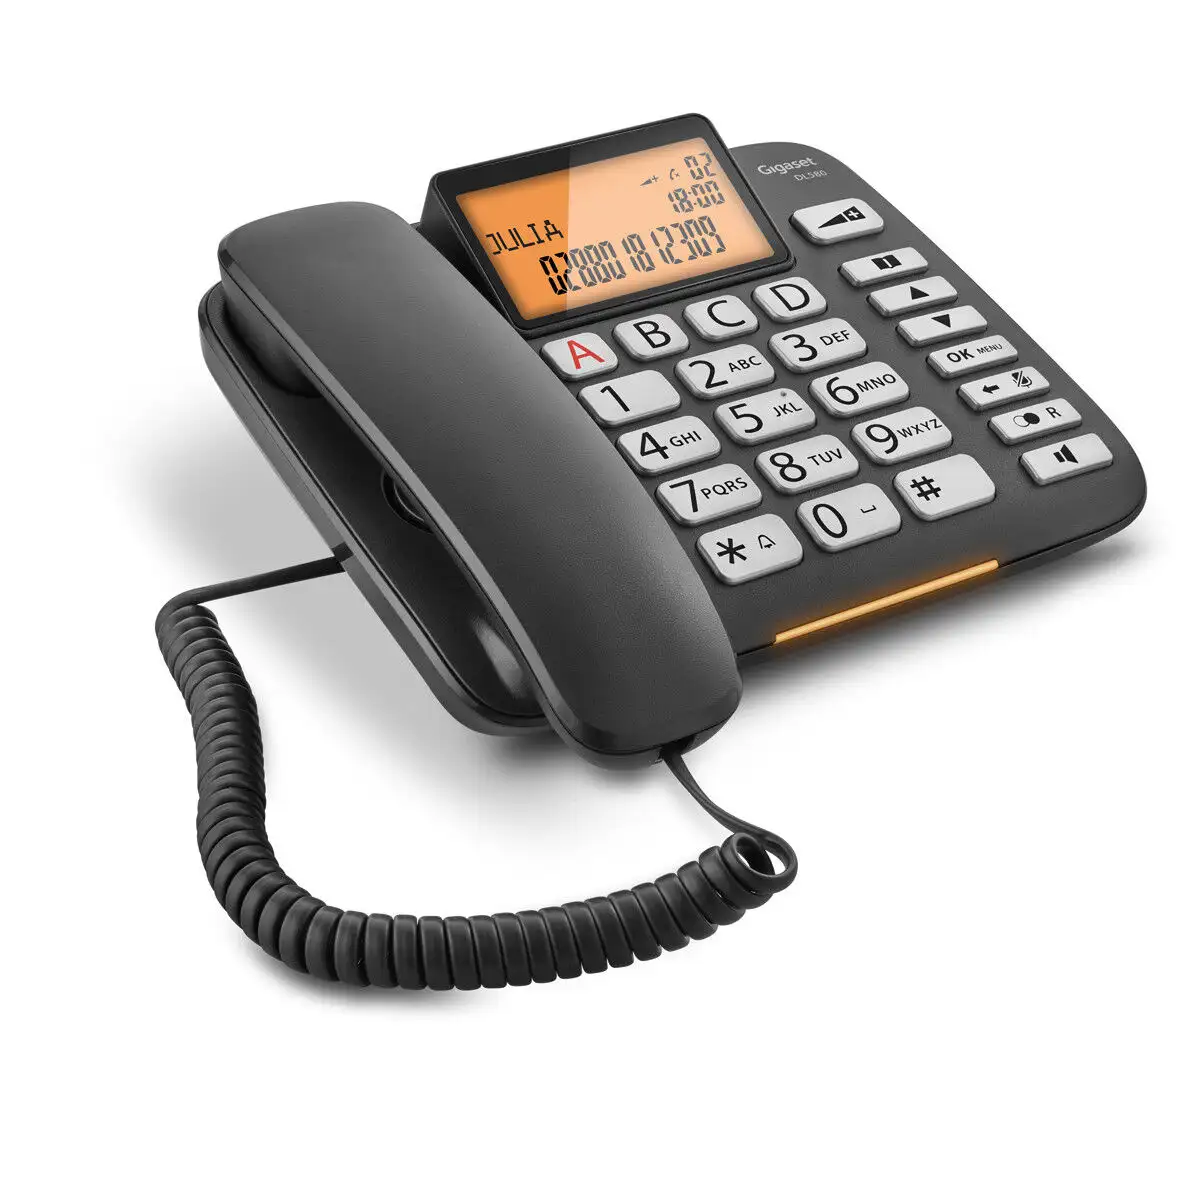 Telephone fixe gigaset s30350 s216 b101 noir reconditionne b _1631. DIAYTAR SENEGAL - Où Chaque Produit est une Promesse de Qualité. Explorez notre boutique en ligne et choisissez des produits qui répondent à vos exigences élevées.